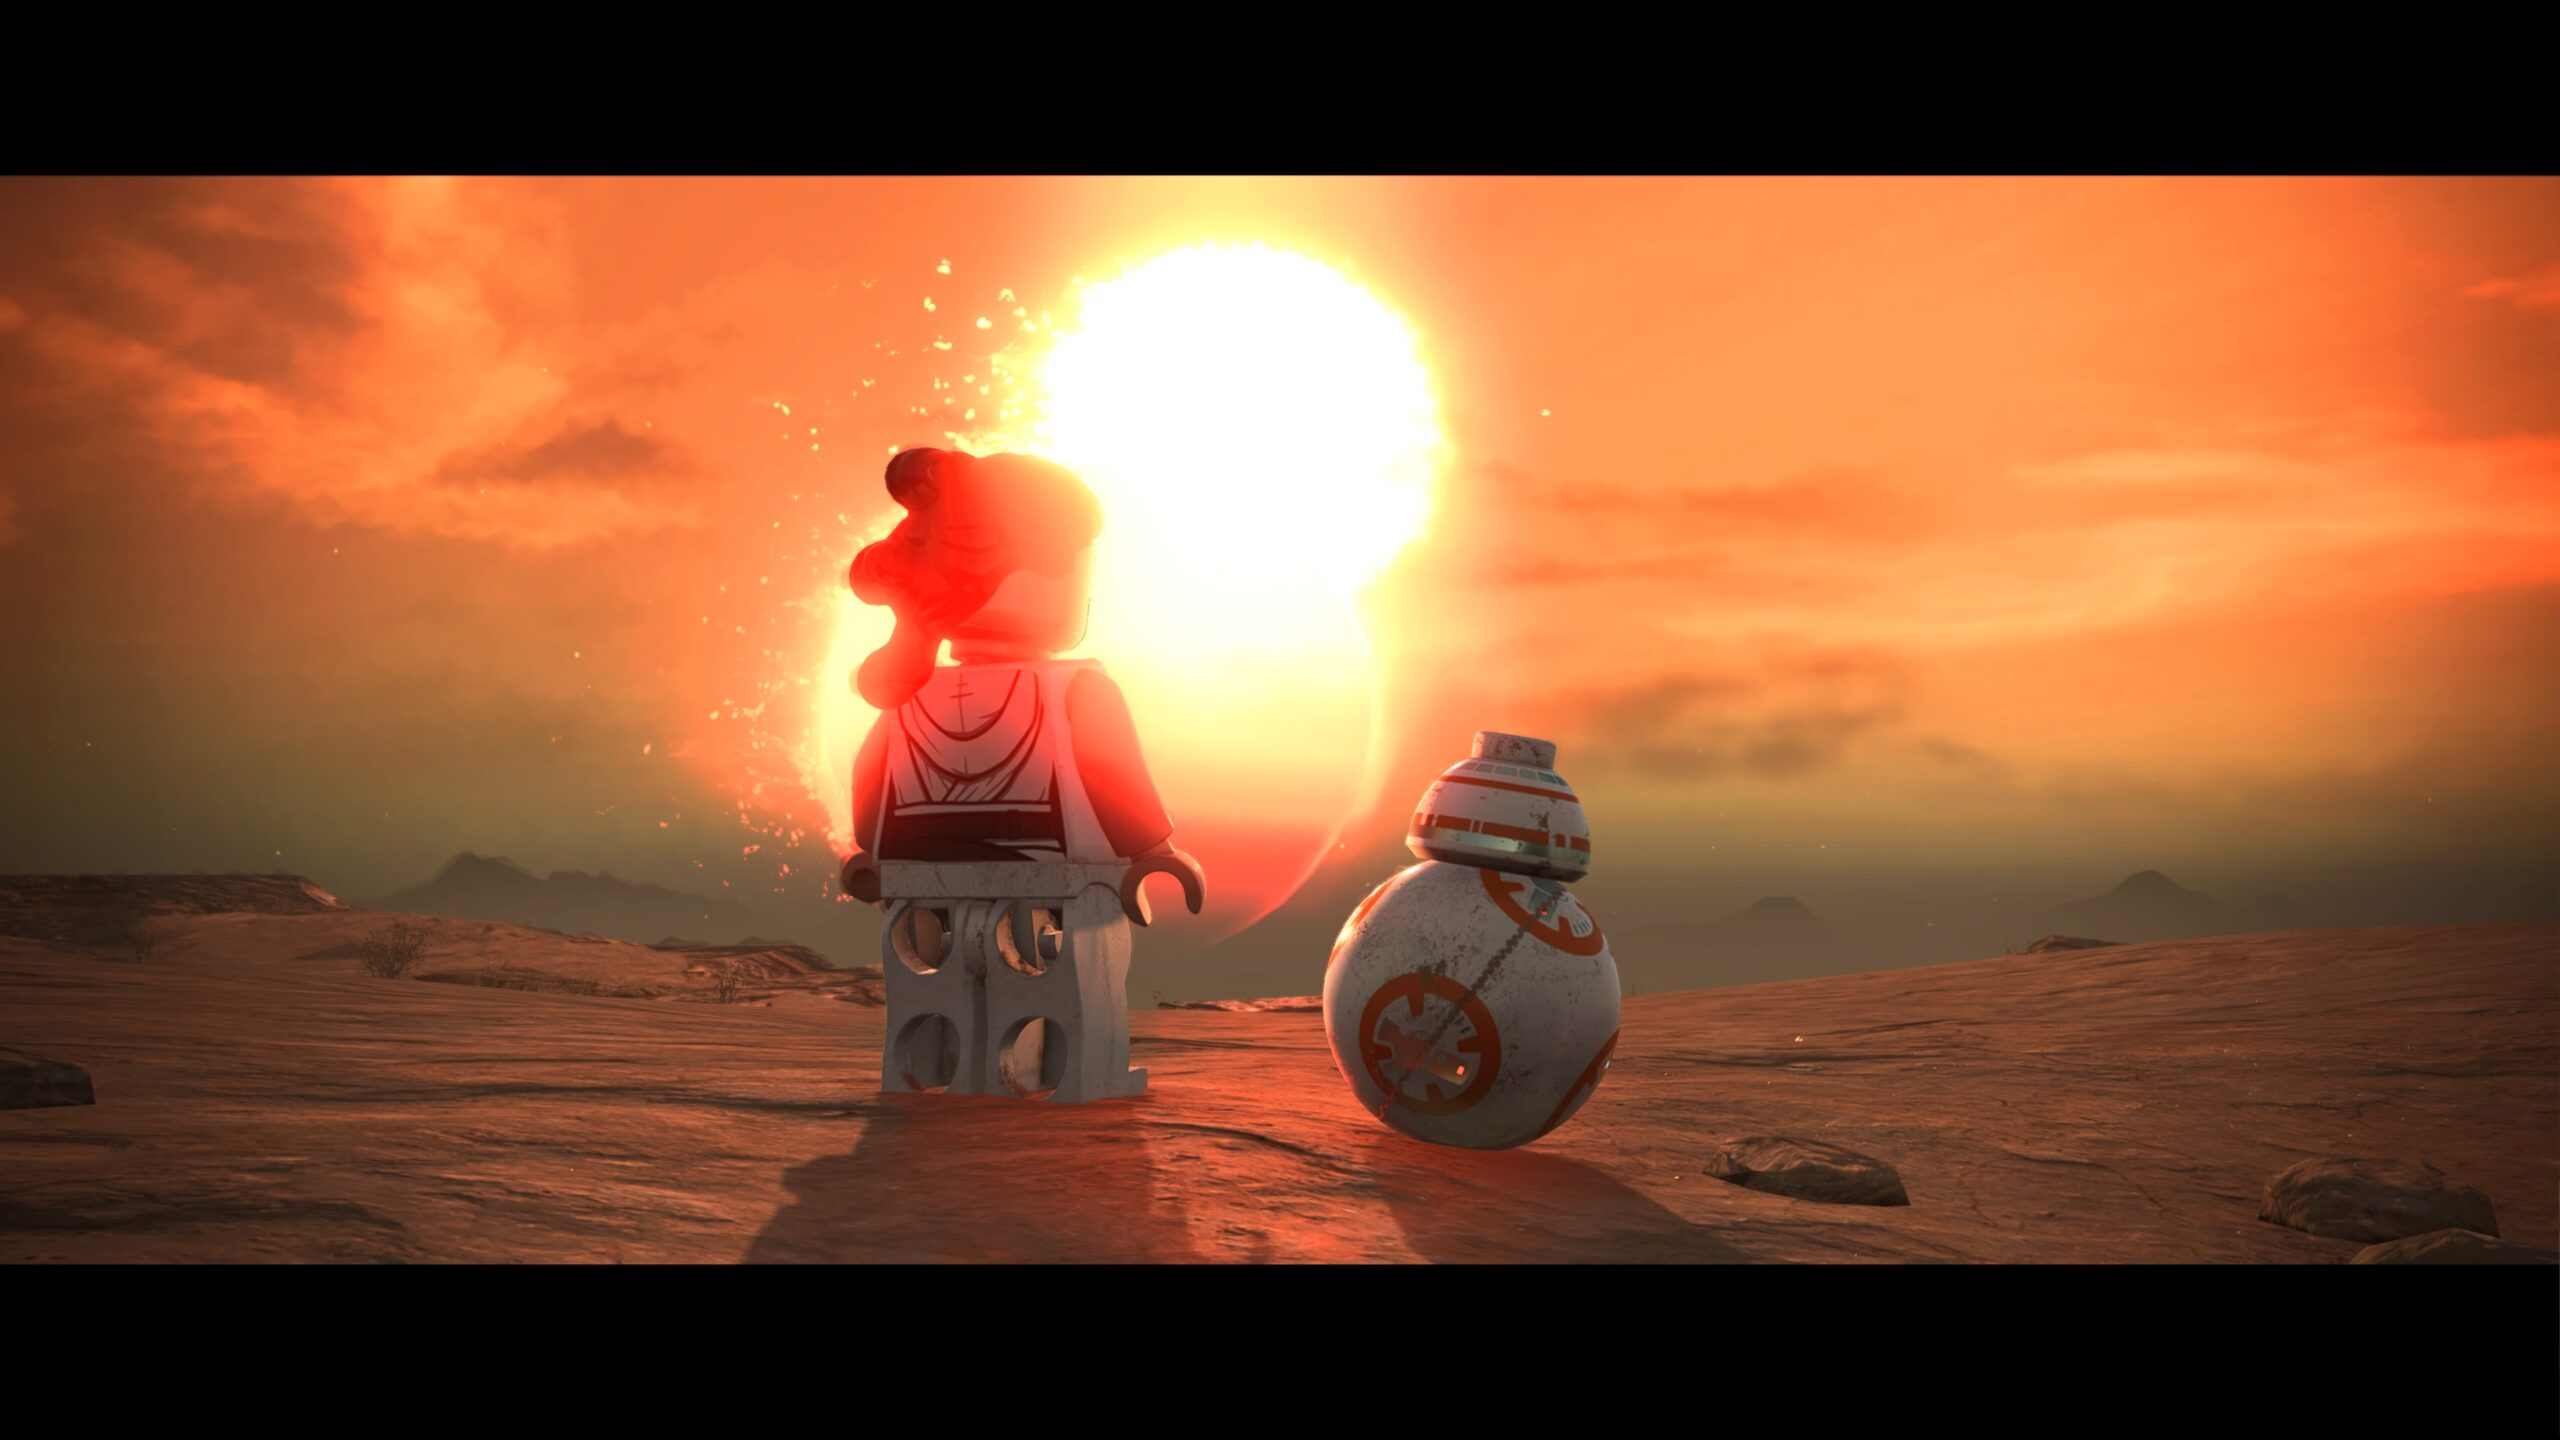 LEGO Star Wars: The Skywalker Saga - GameSpot